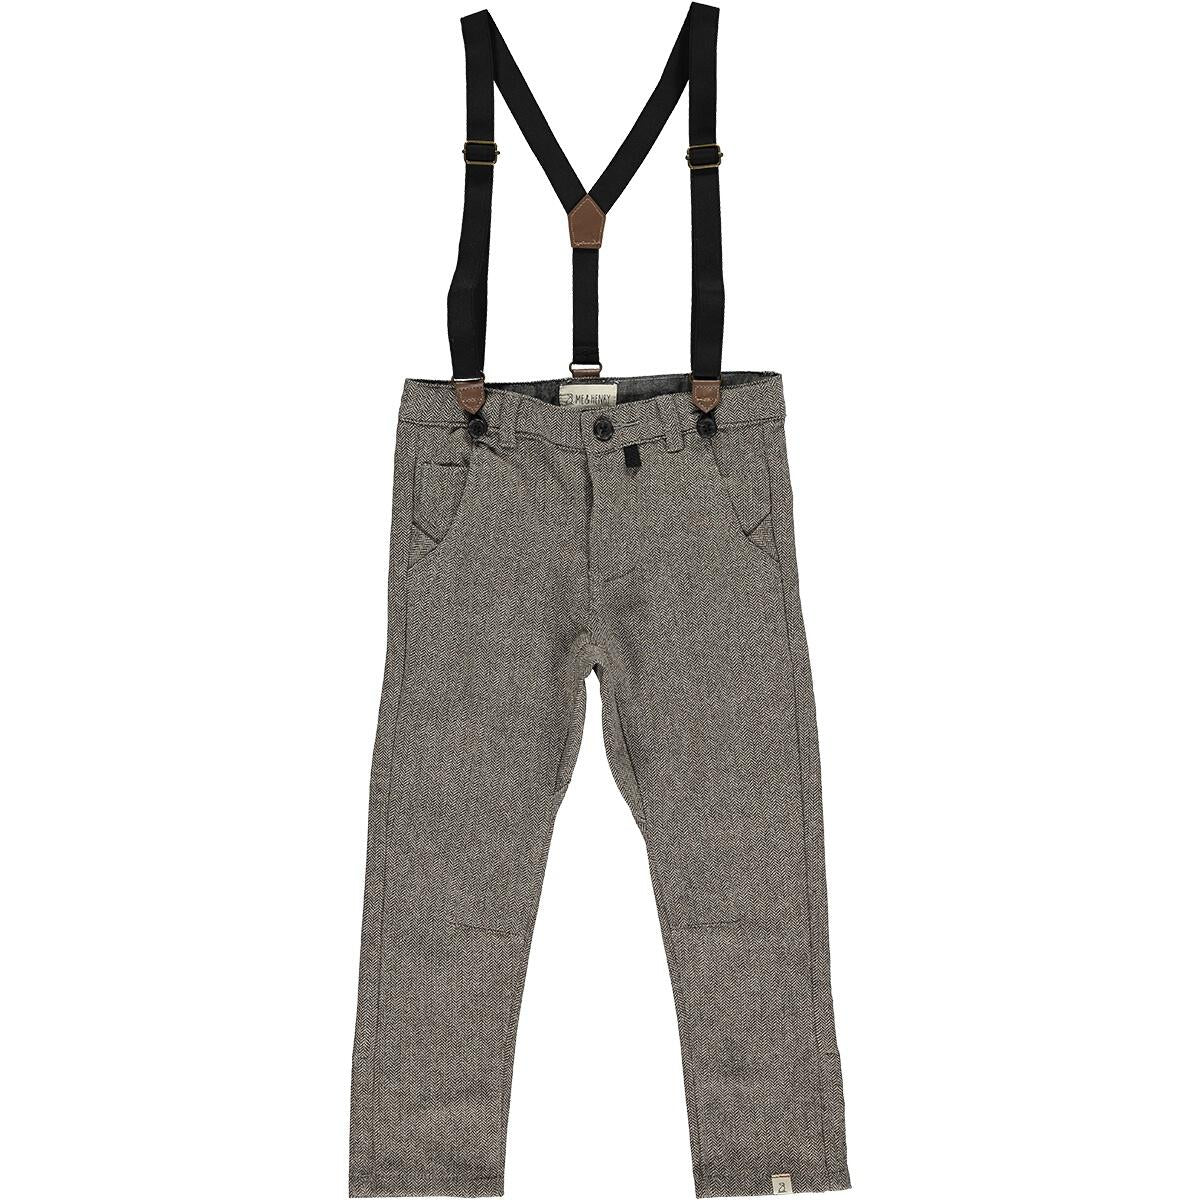 Herringbone Pants with Suspenders - Brown